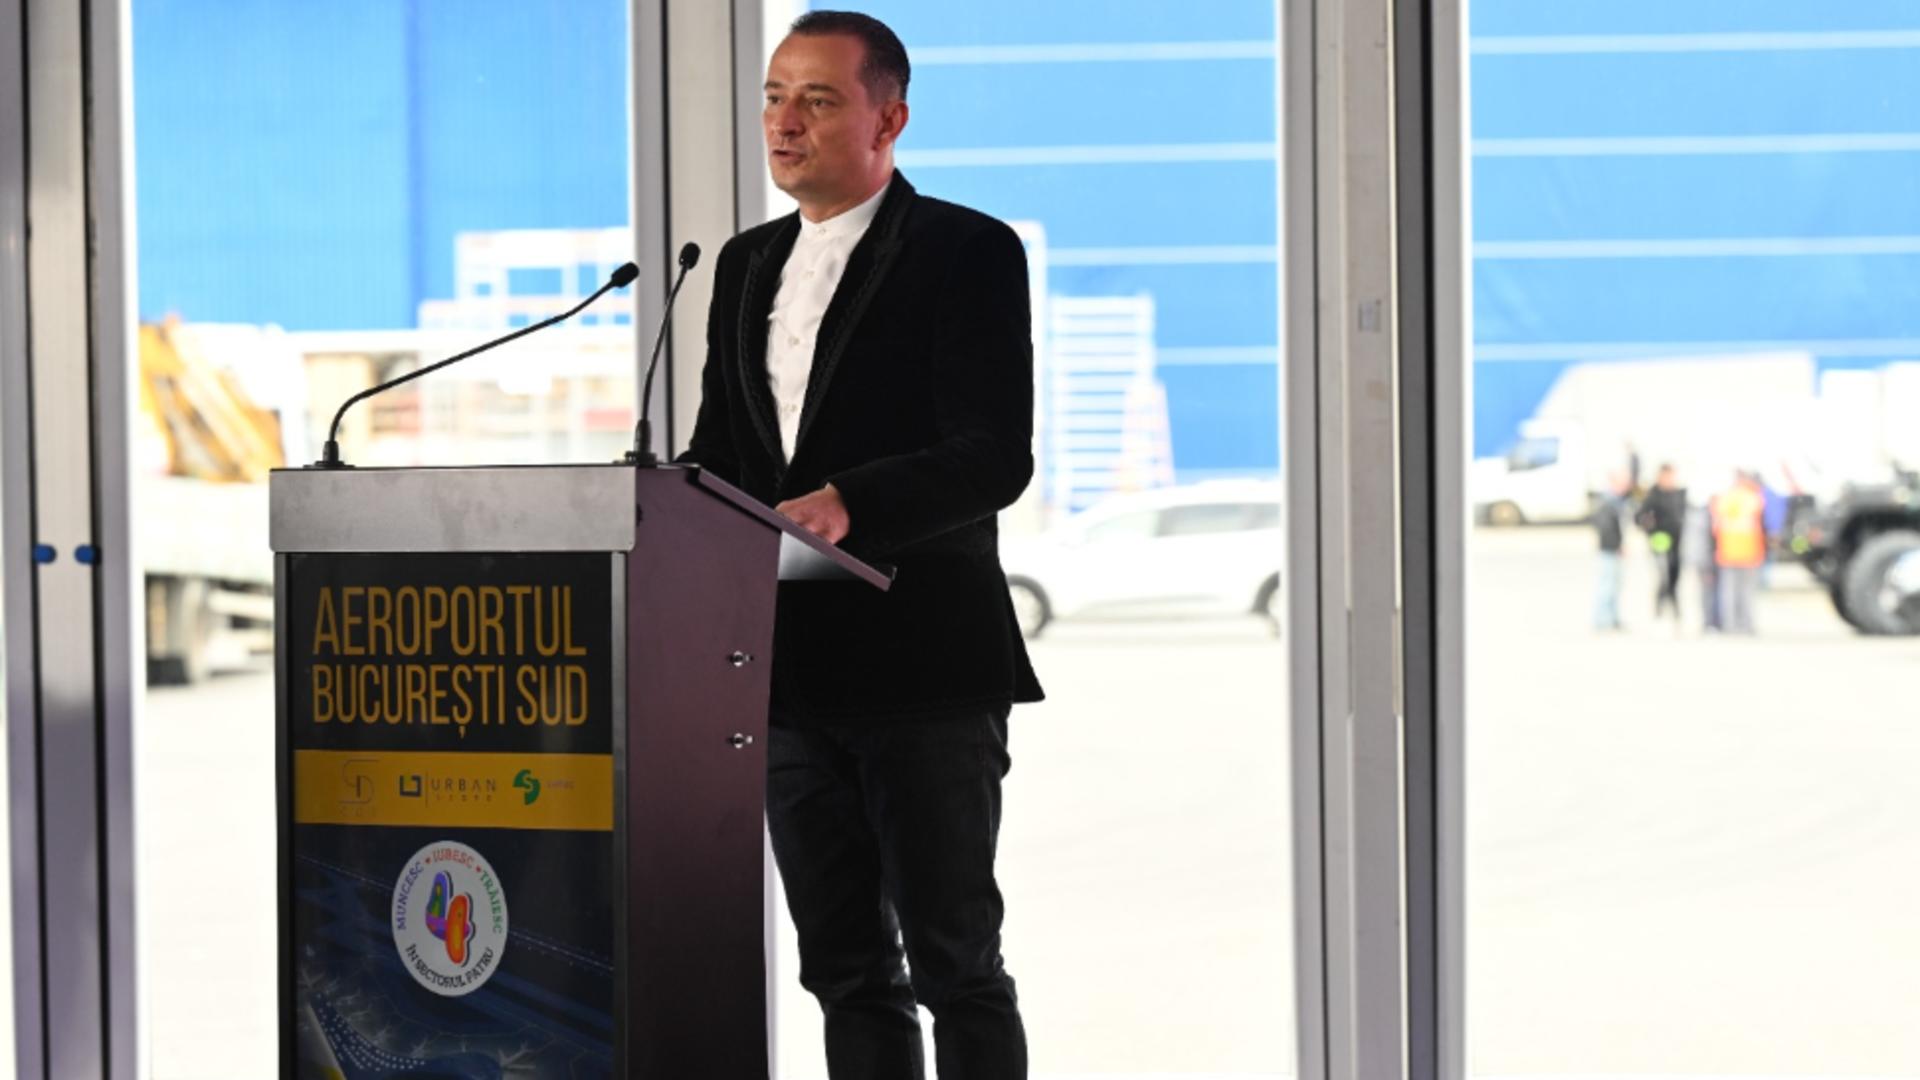 Aeroportul București-Sud, noua poartă de acces către Europa, va deservi peste 11 milioane de pasageri și va permite transportul a minimum 30.000 de tone de mărfuri în fiecare an